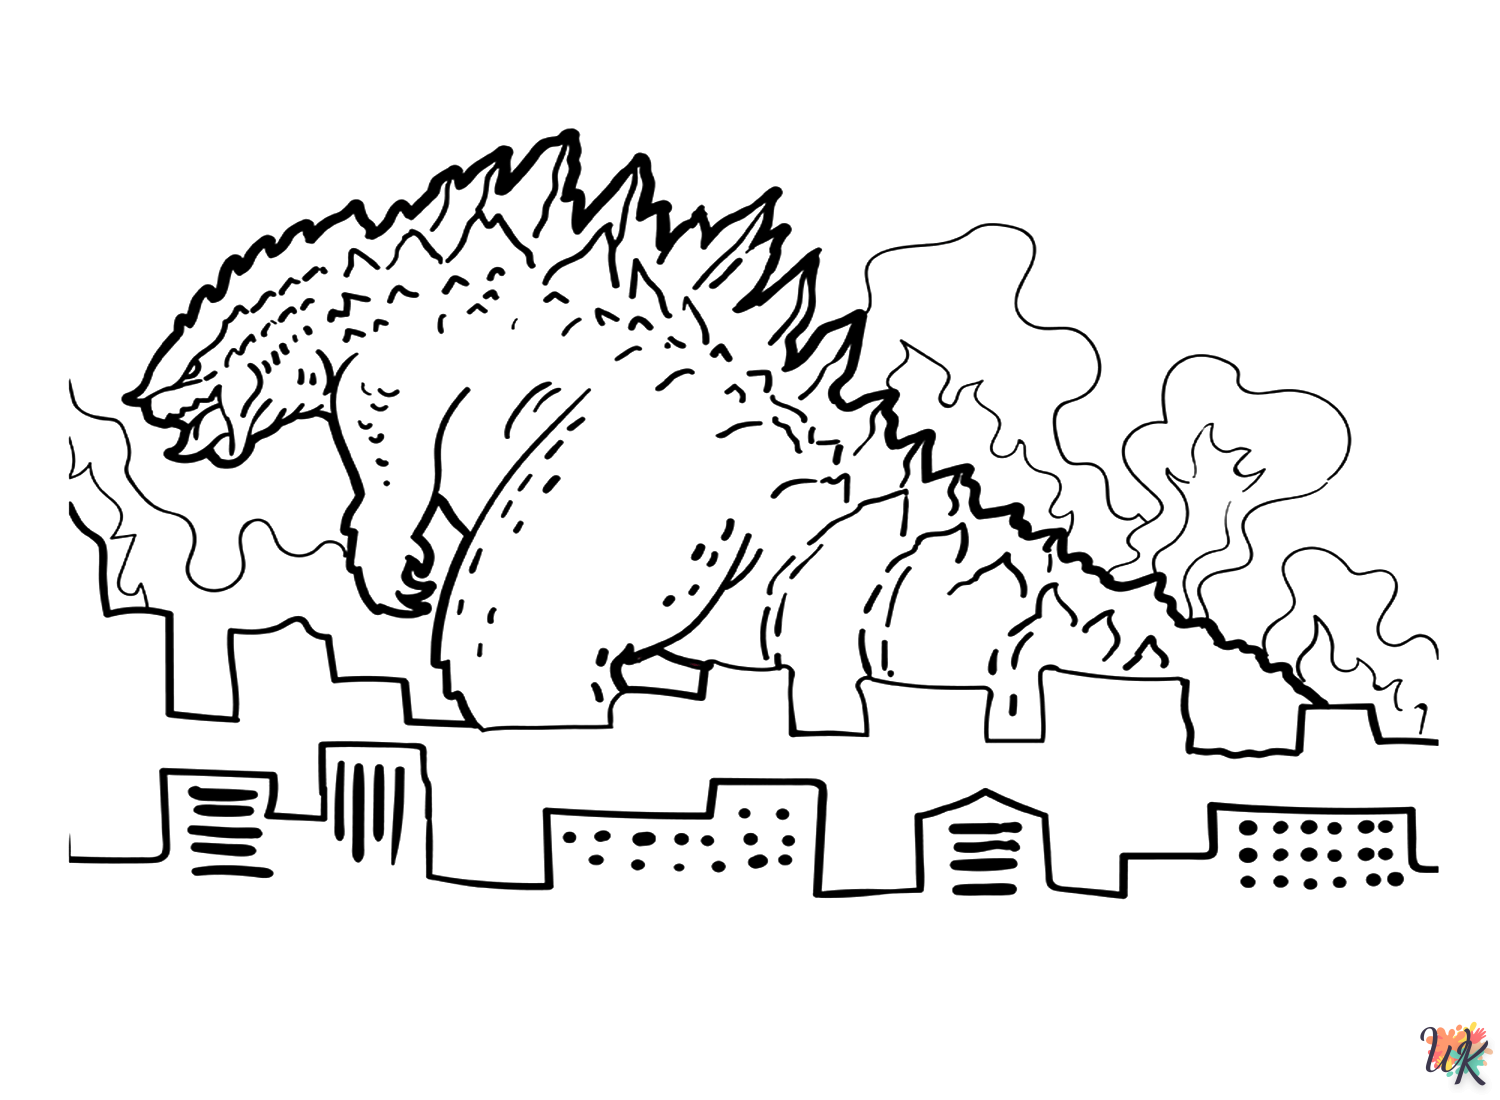 Godzilla kleurplaten26